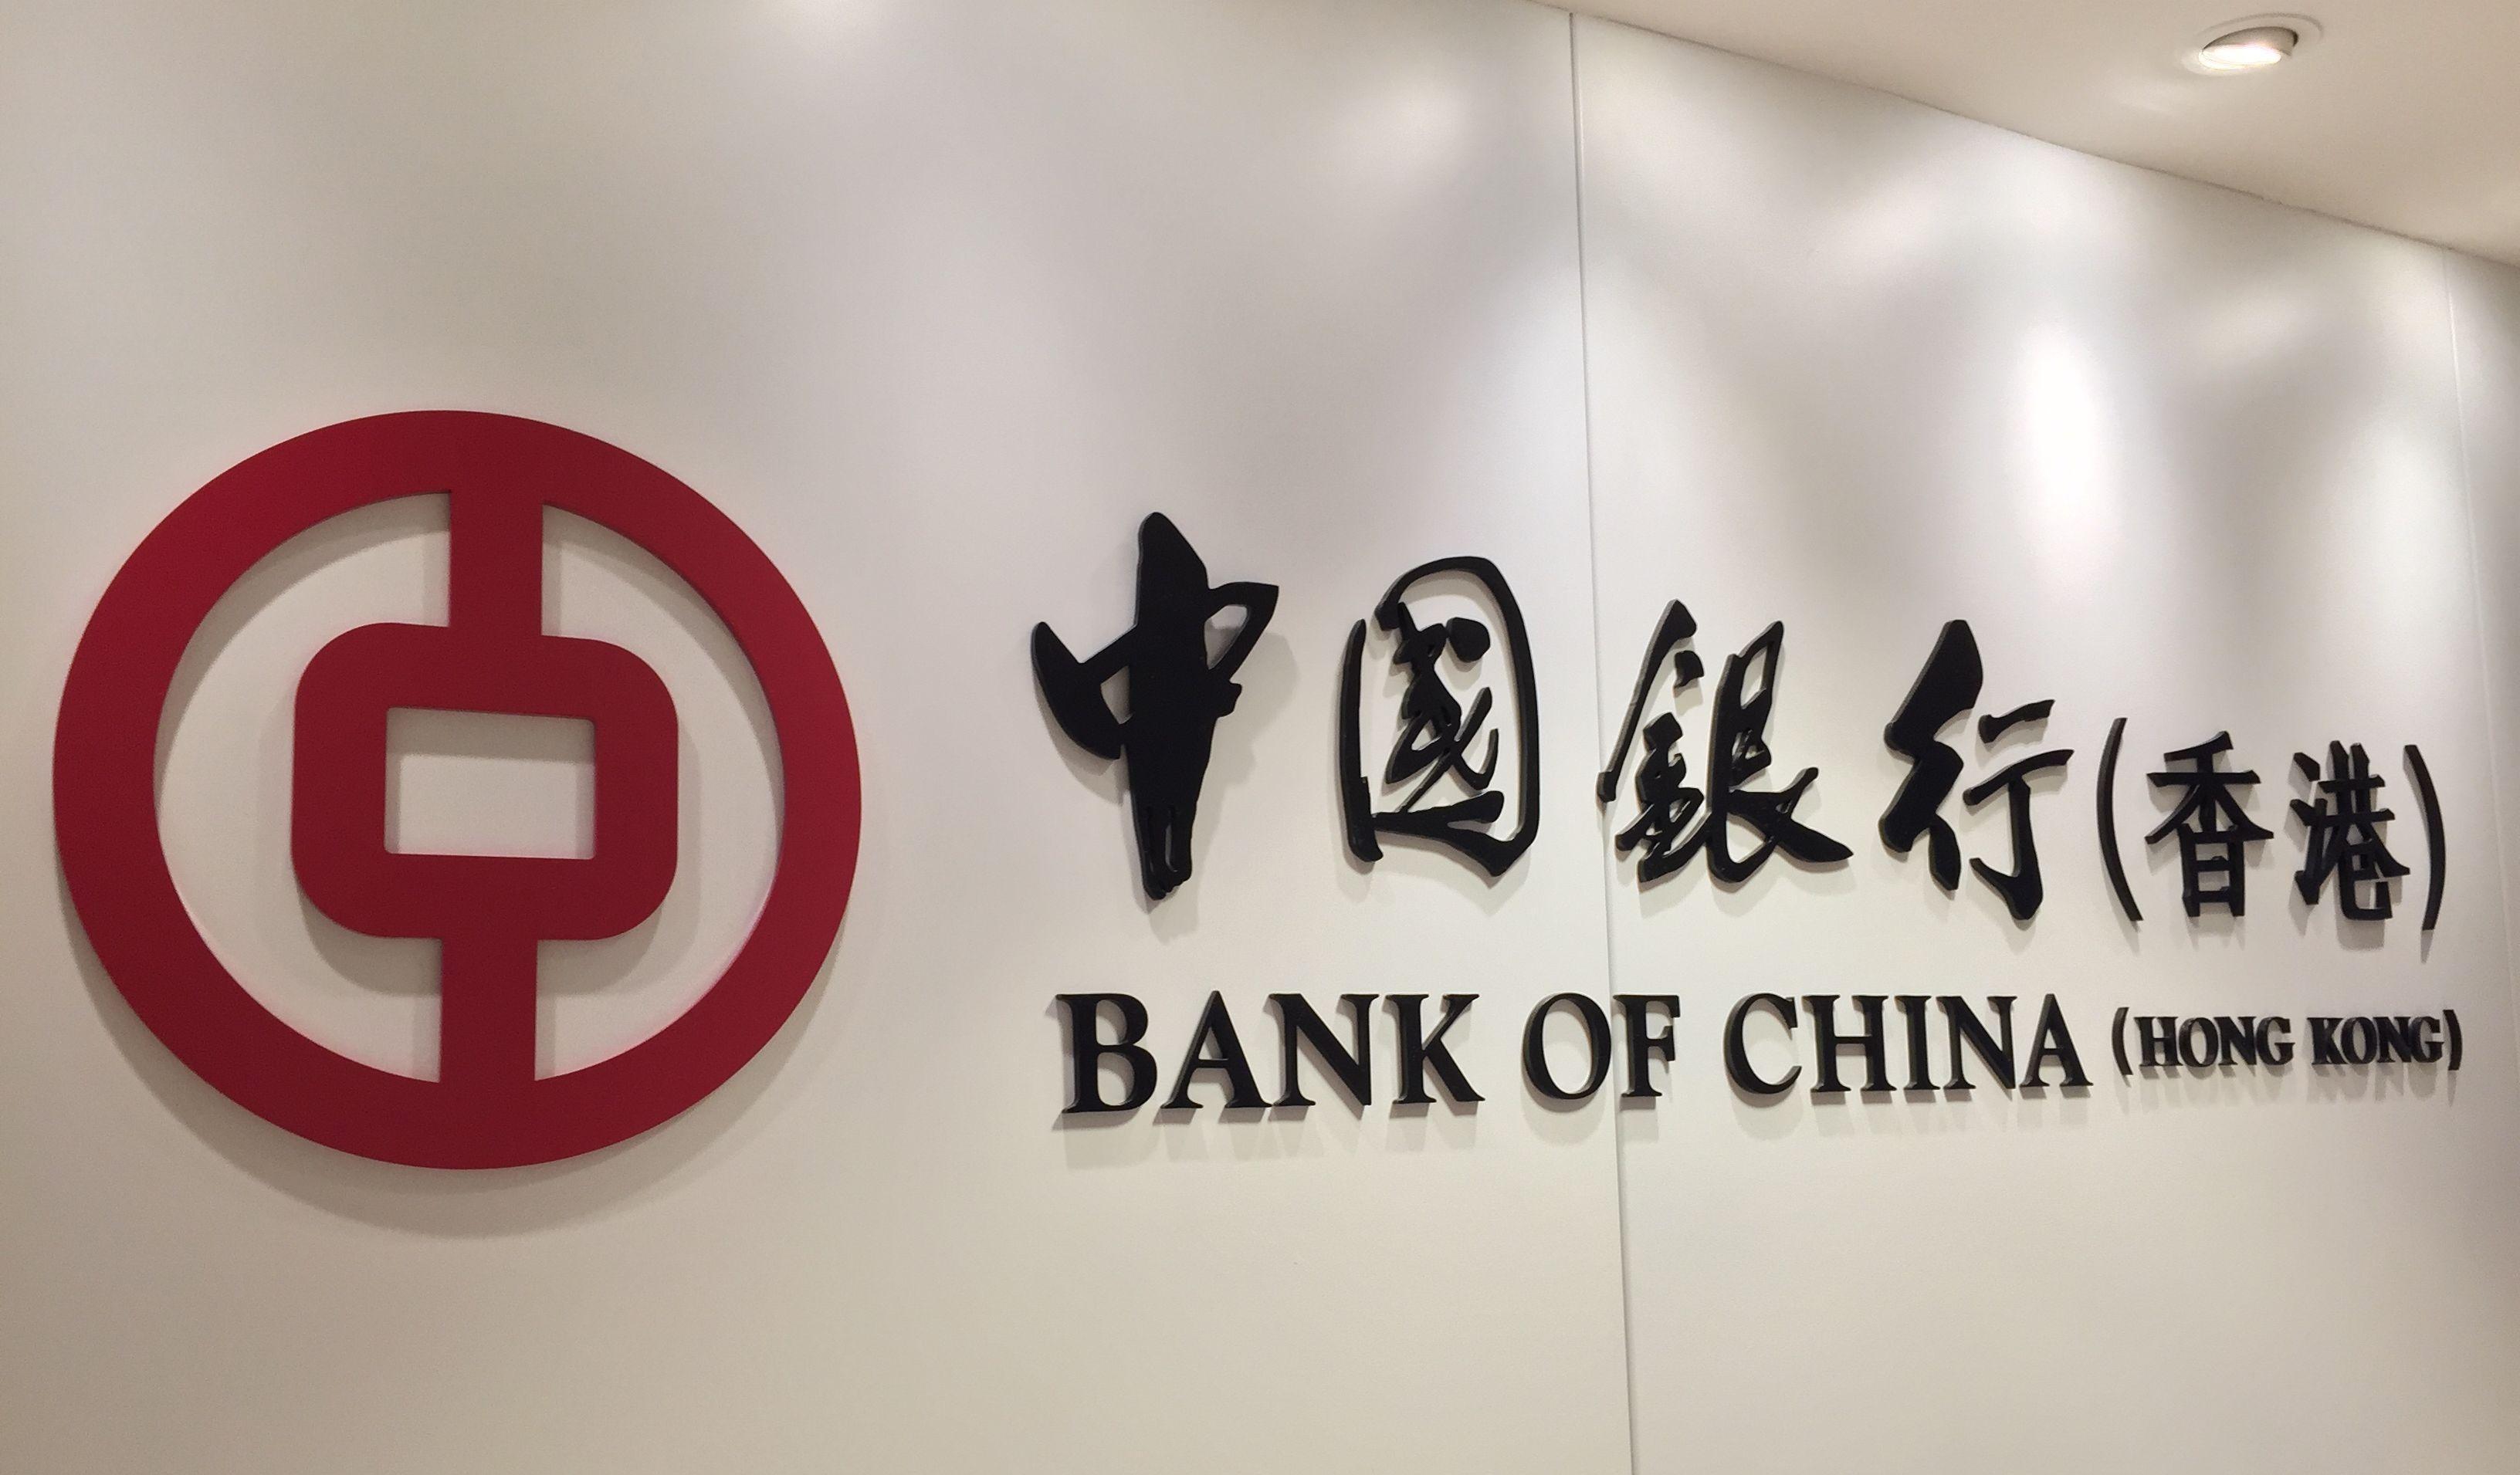 中国银行(香港)简介 - 发展历程